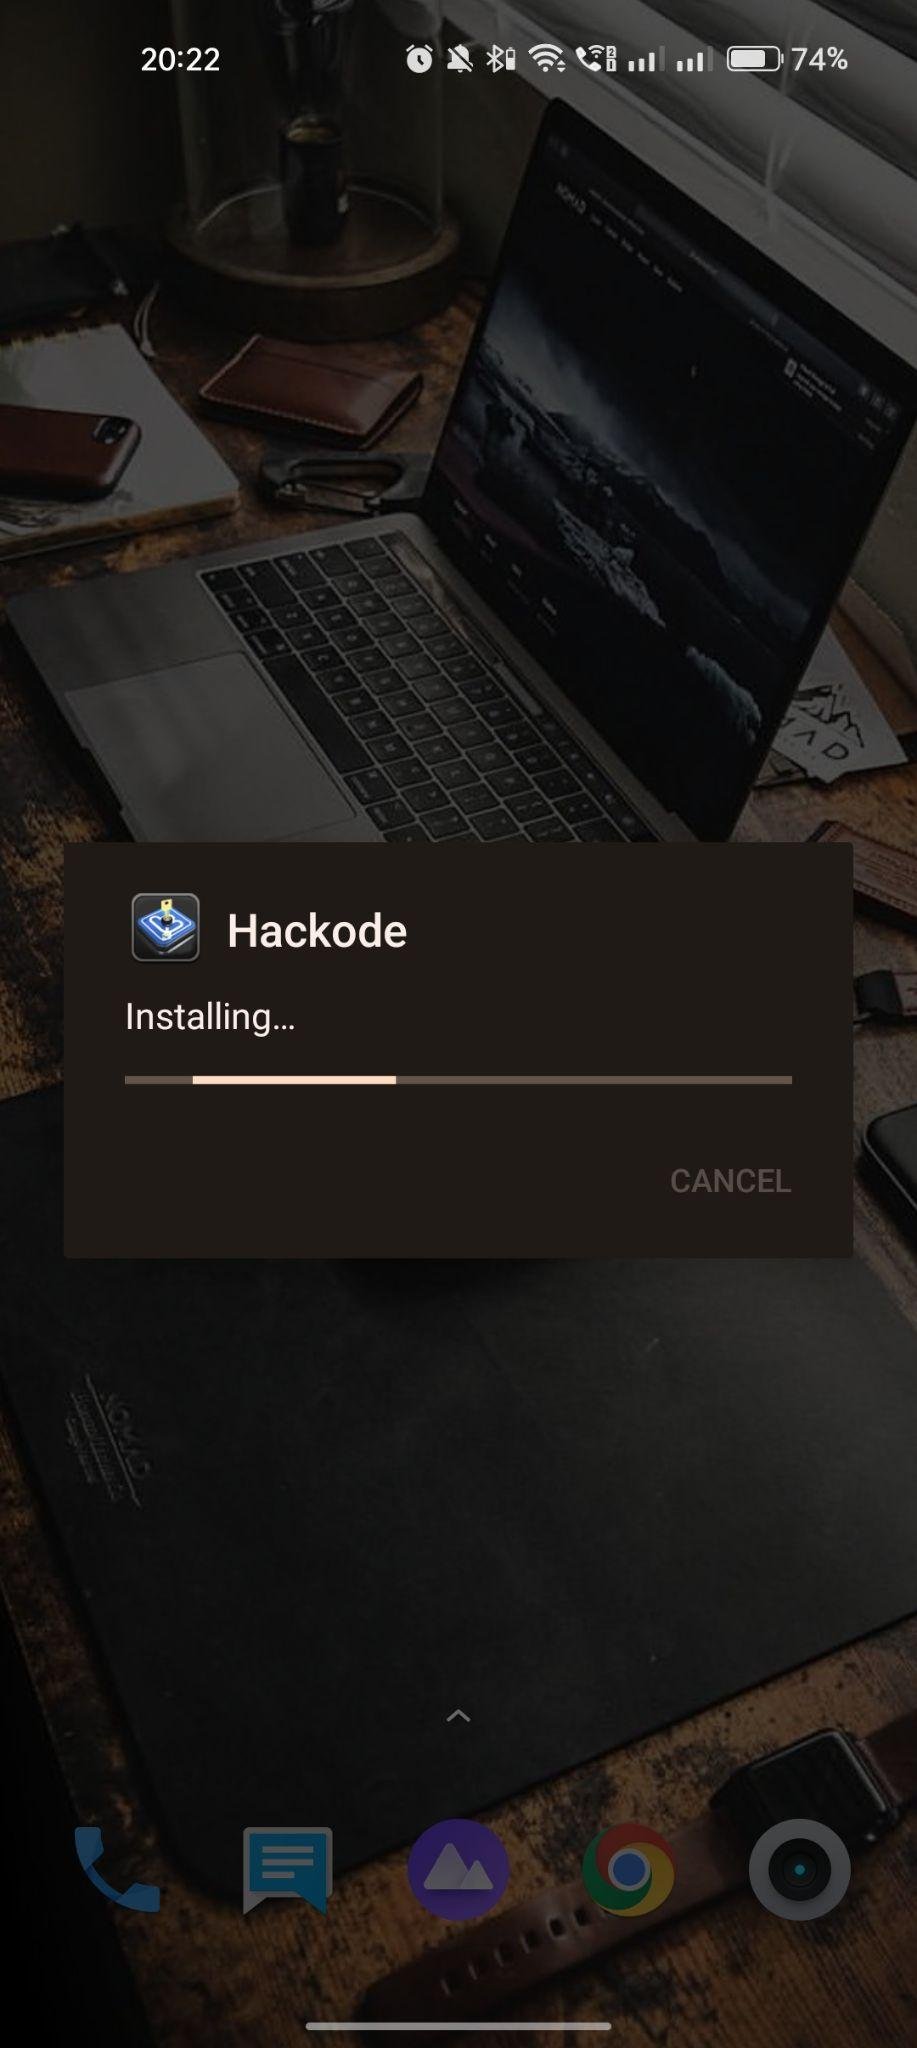 Hackode apk installing